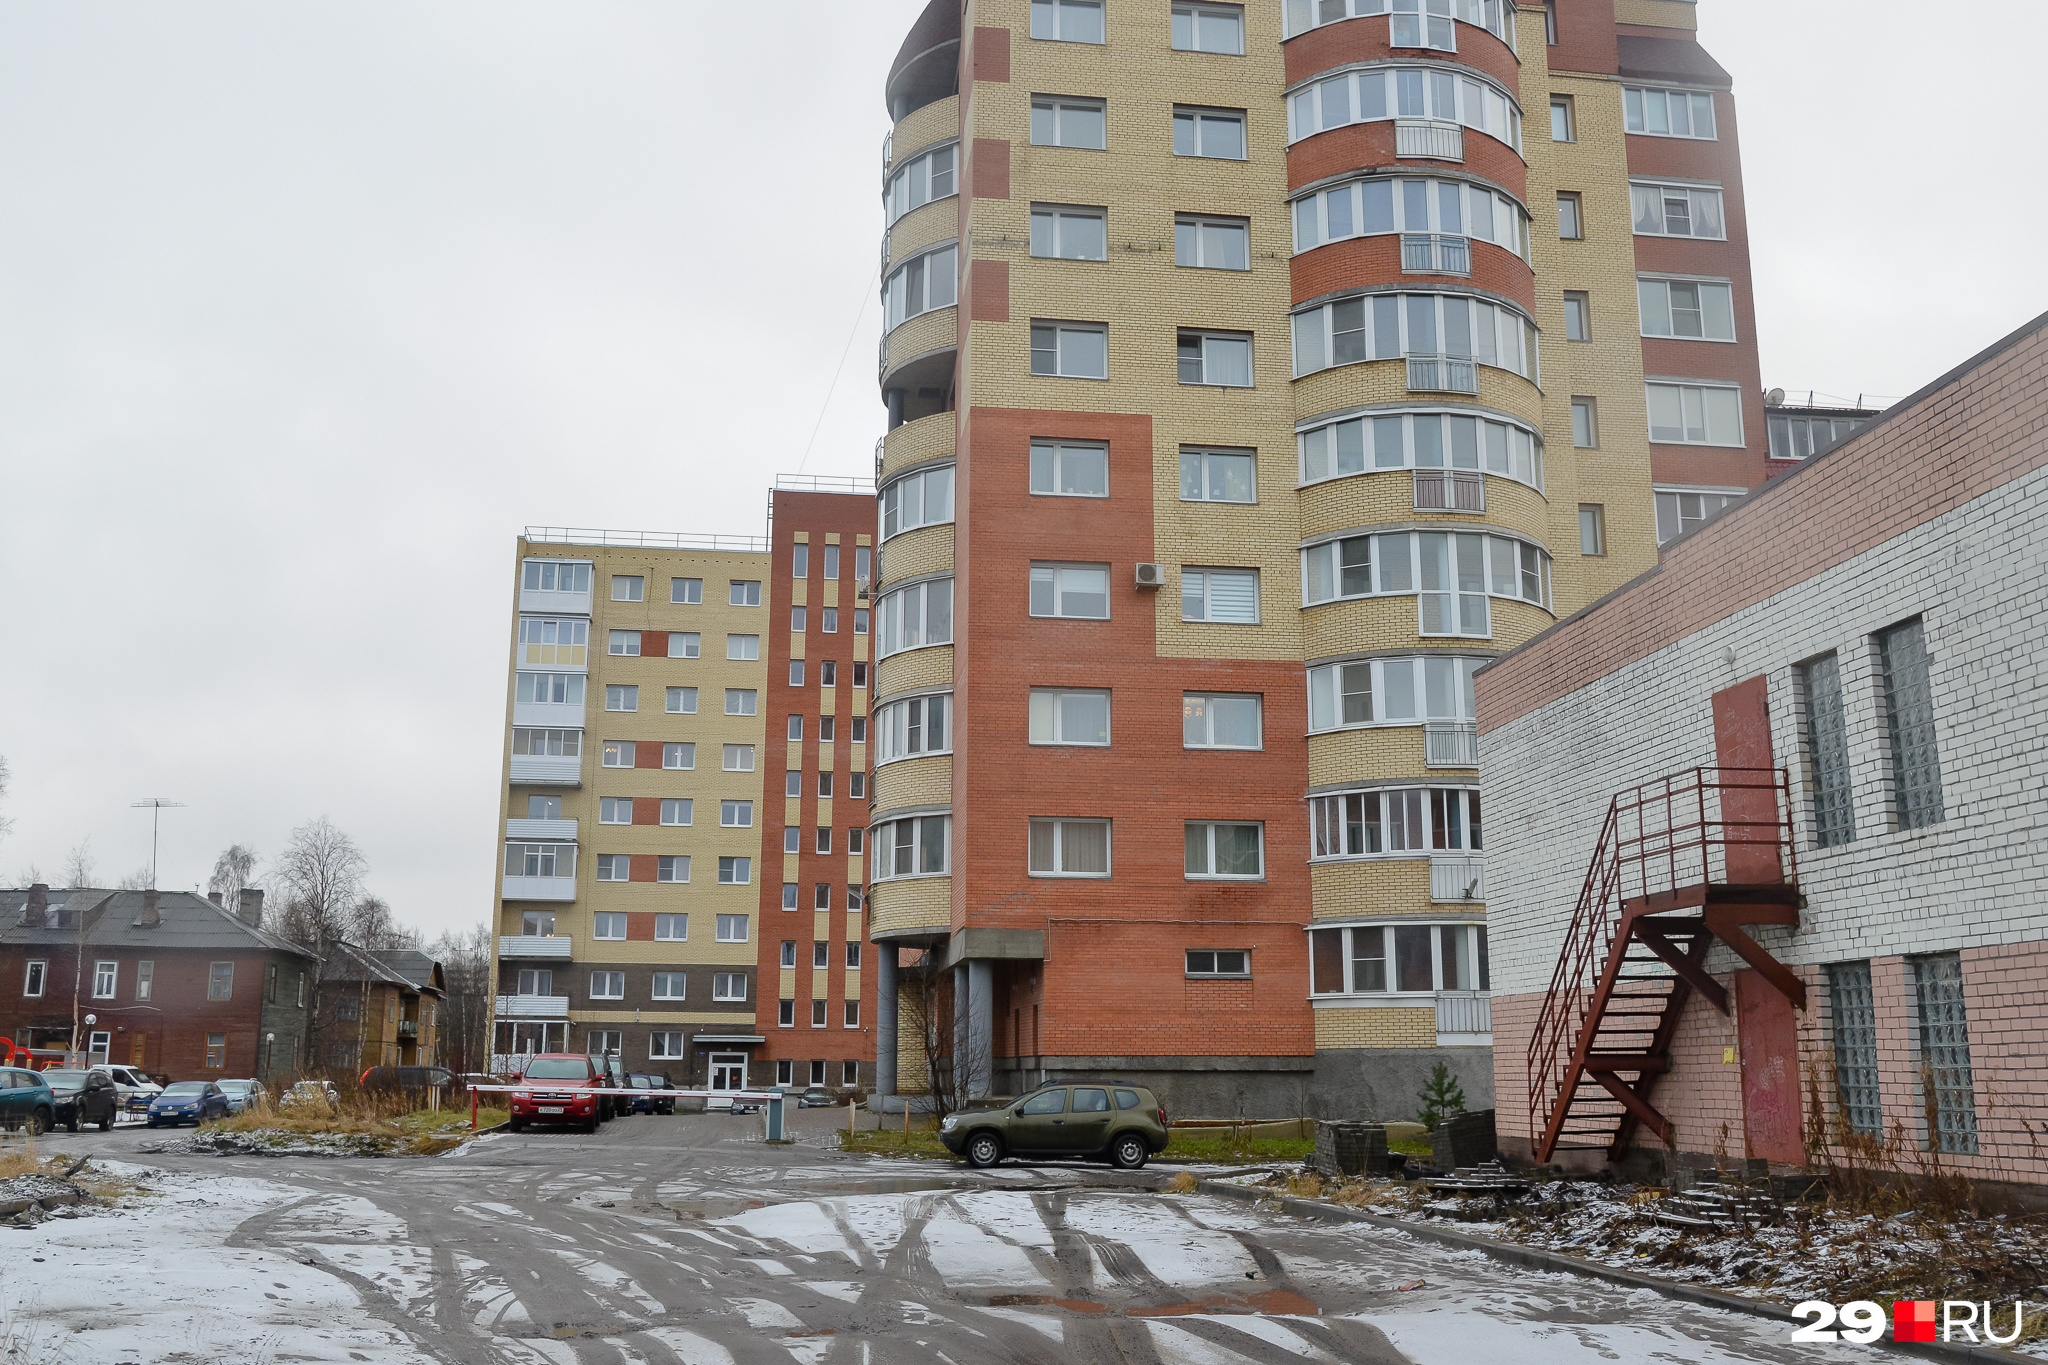 Жильцы домов на улице Серафимовича тоже обеспокоены застройкой квартала